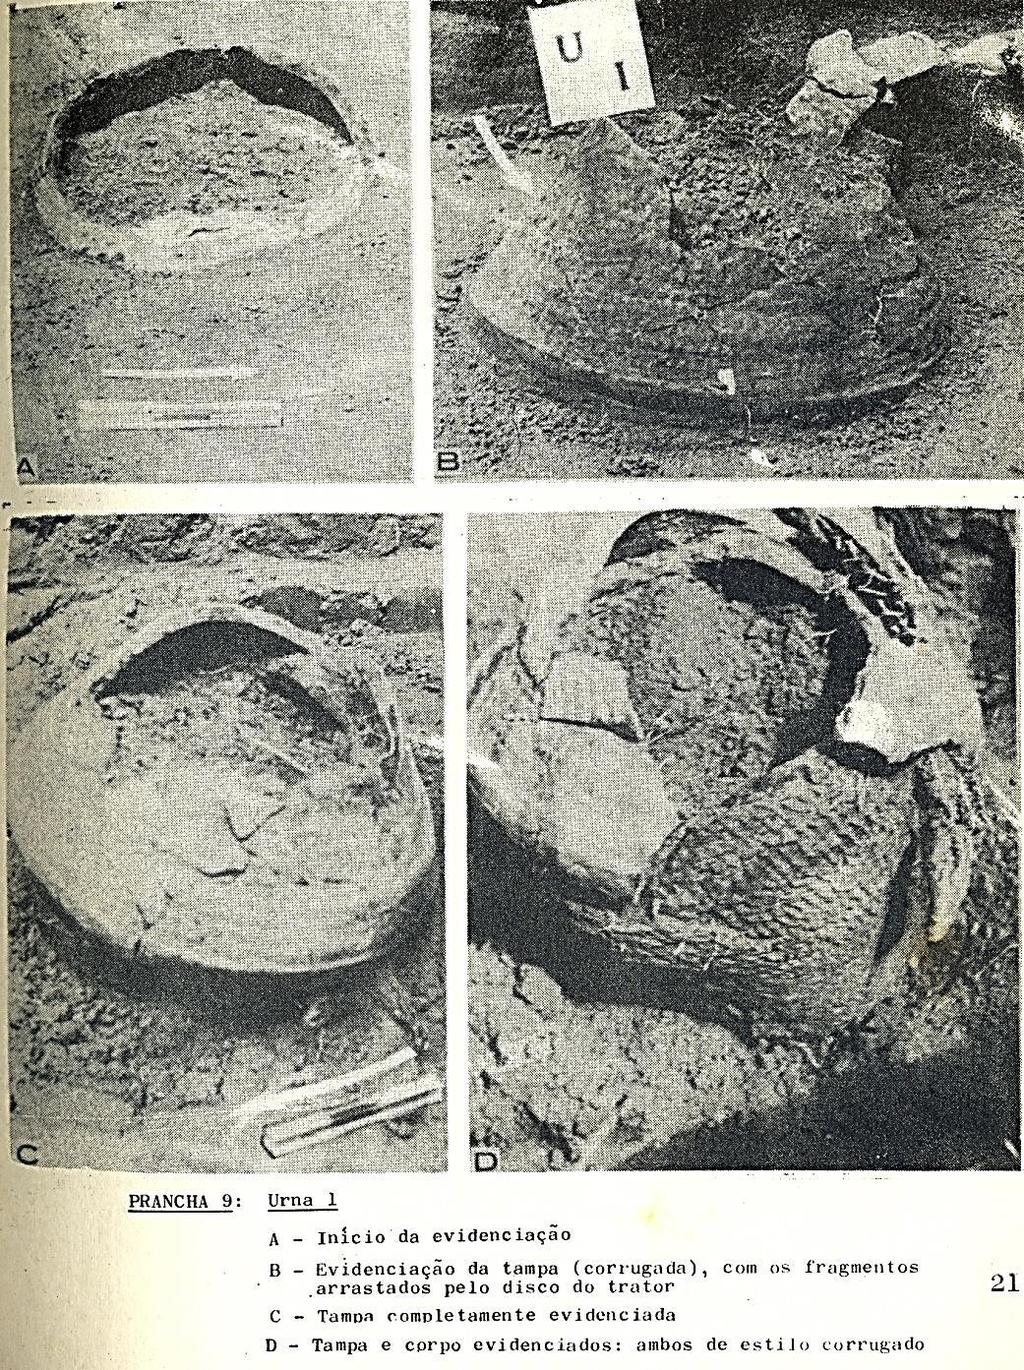 Abaixo, fotos da escavação do sepultamento I, tiradas pela arqueóloga na época. É possível notar a tampa quebrada e o sedimento dentro da urna, e que tanto a tampa quanto a urna eram corrugadas.